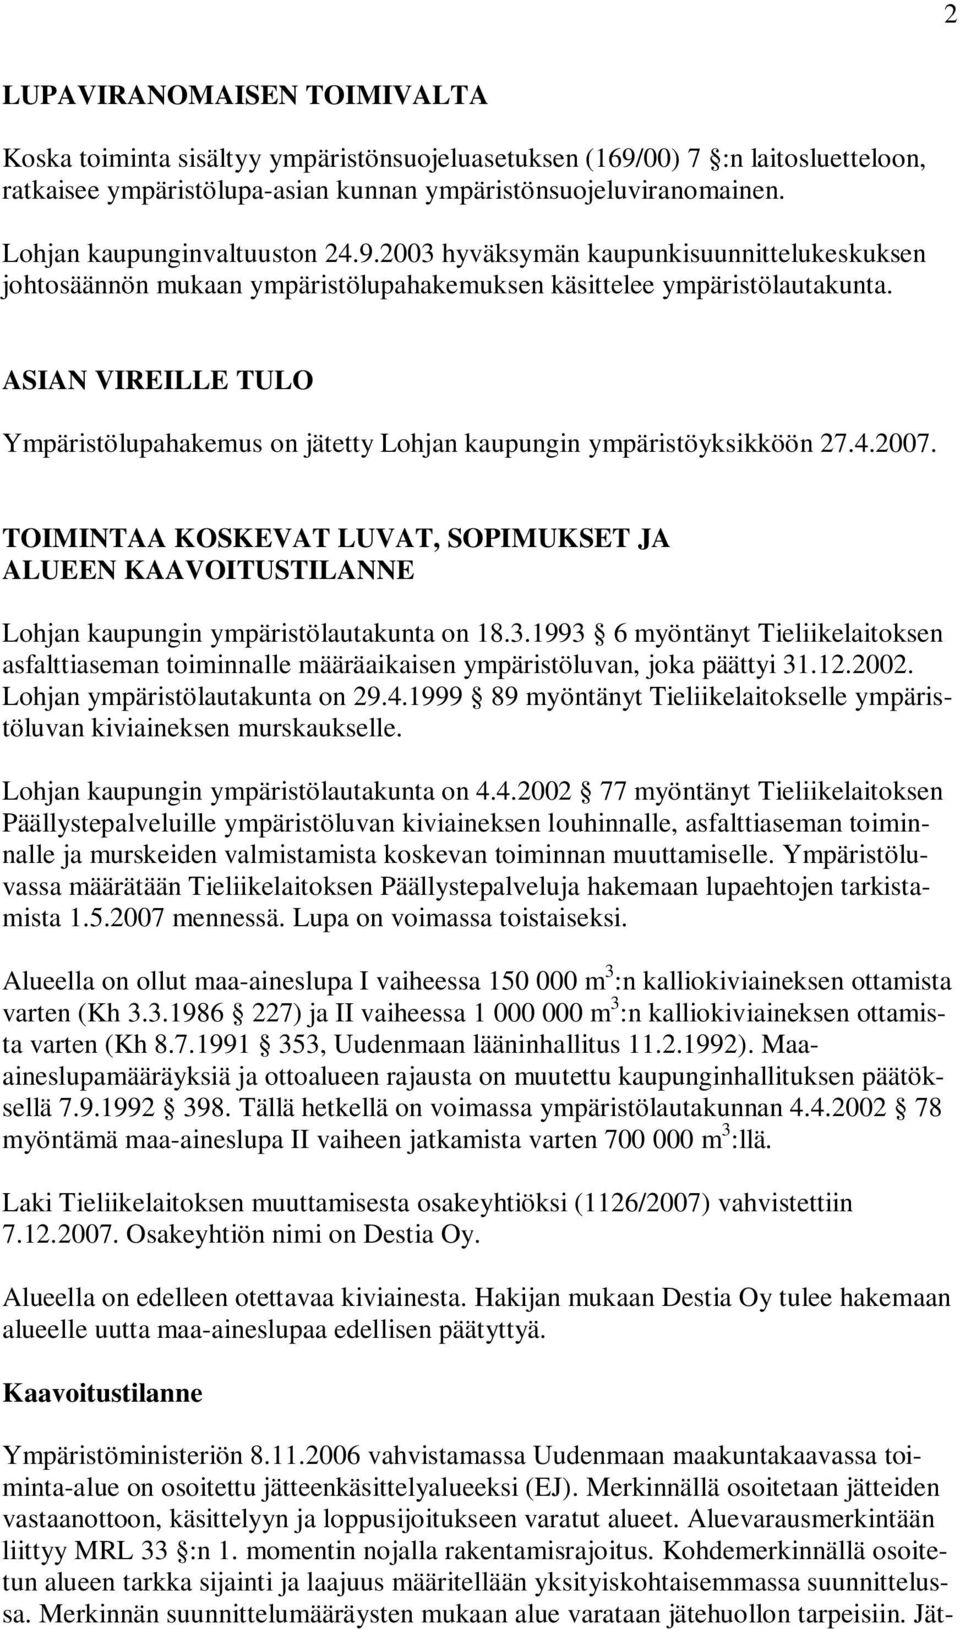 ASIAN VIREILLE TULO Ympäristölupahakemus on jätetty Lohjan kaupungin ympäristöyksikköön 27.4.2007.